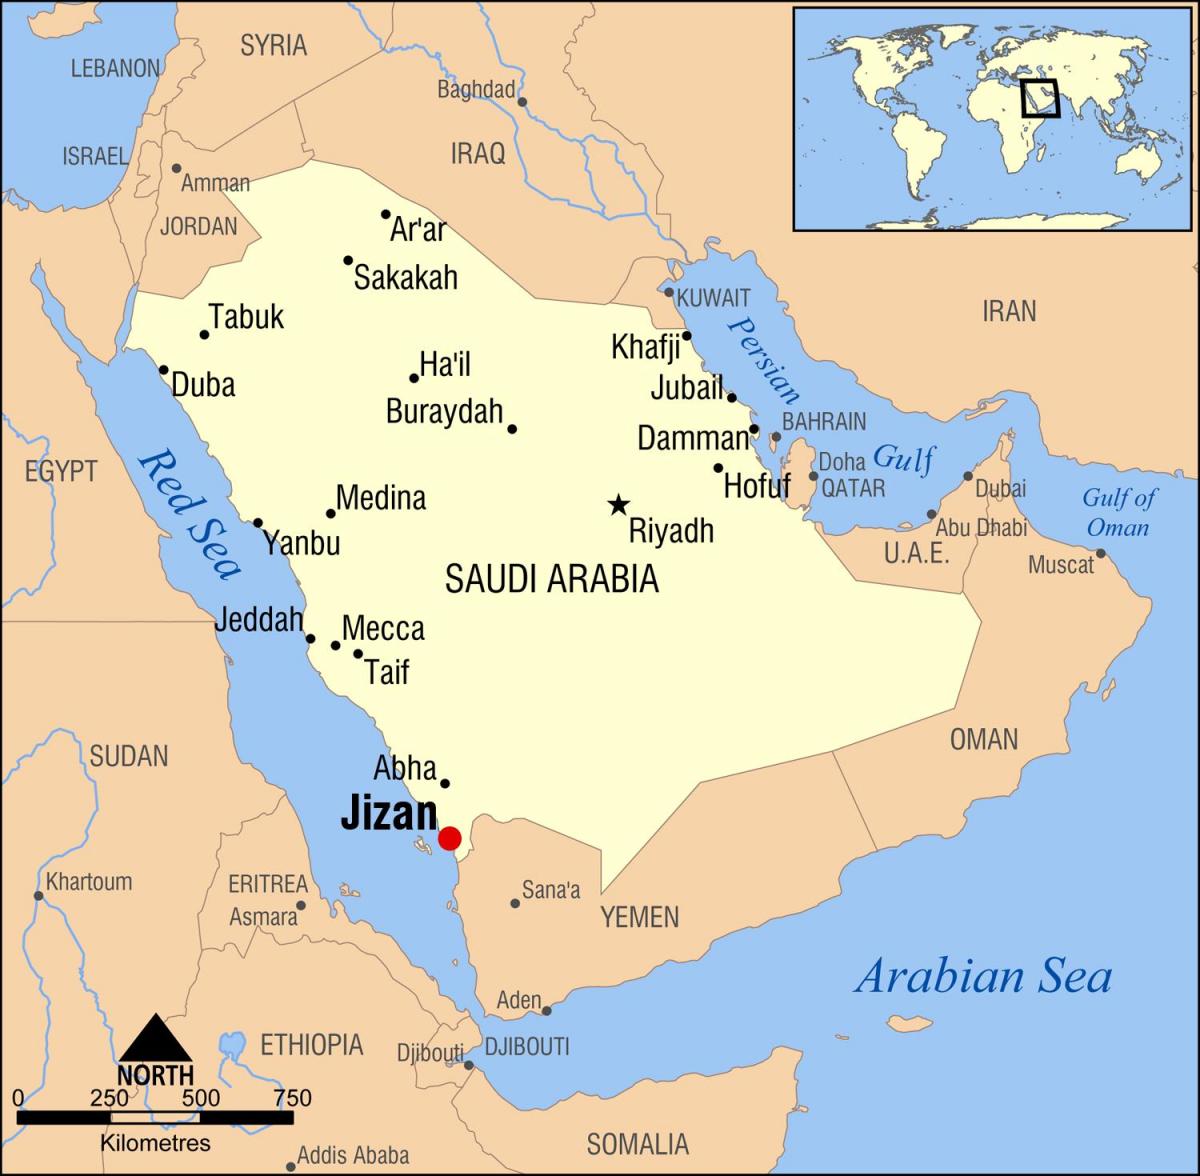 jizan KSA નકશો